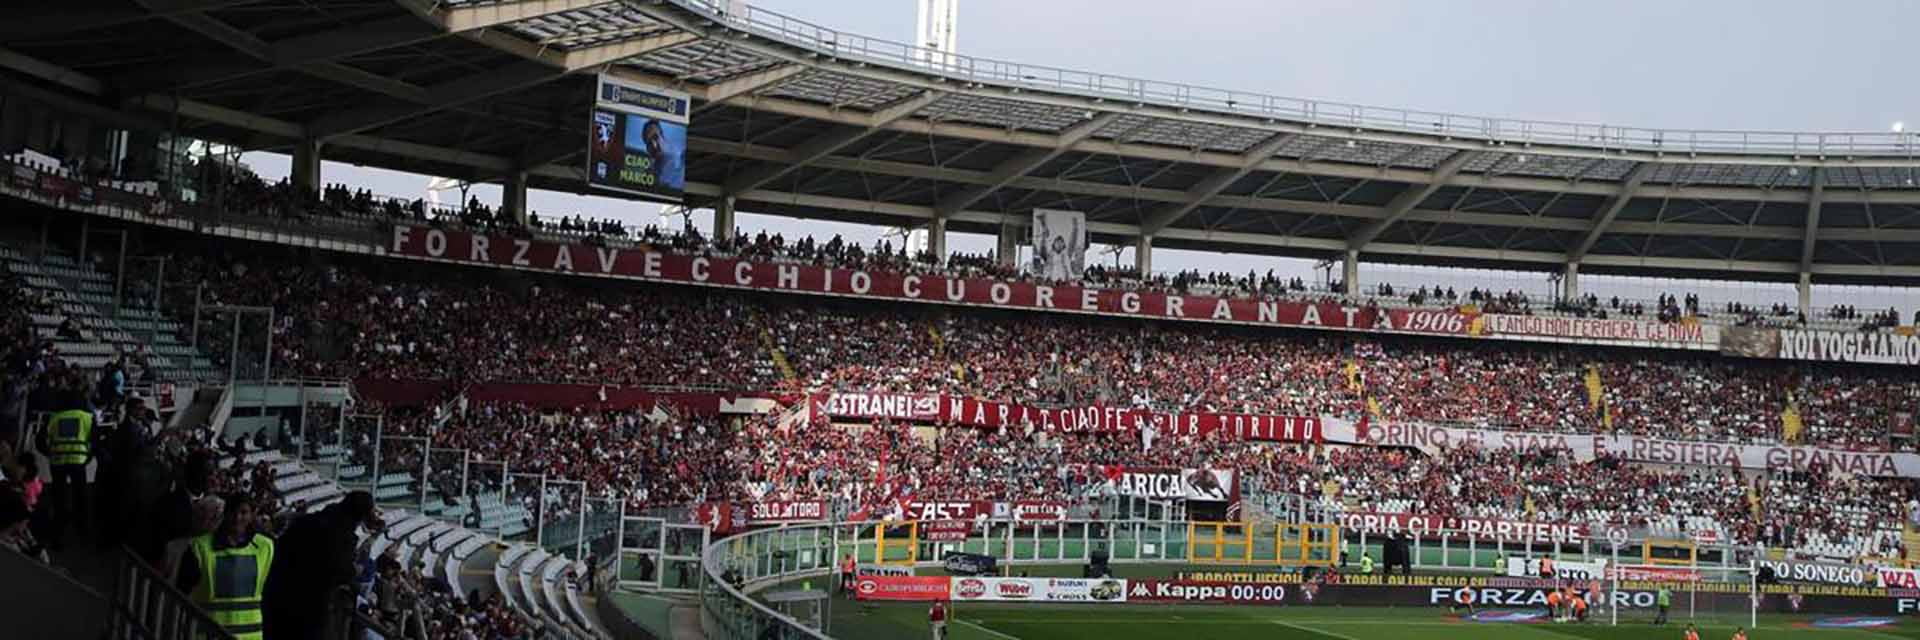 Torino FC - AC Milan, 7 Oktoberum 20:45